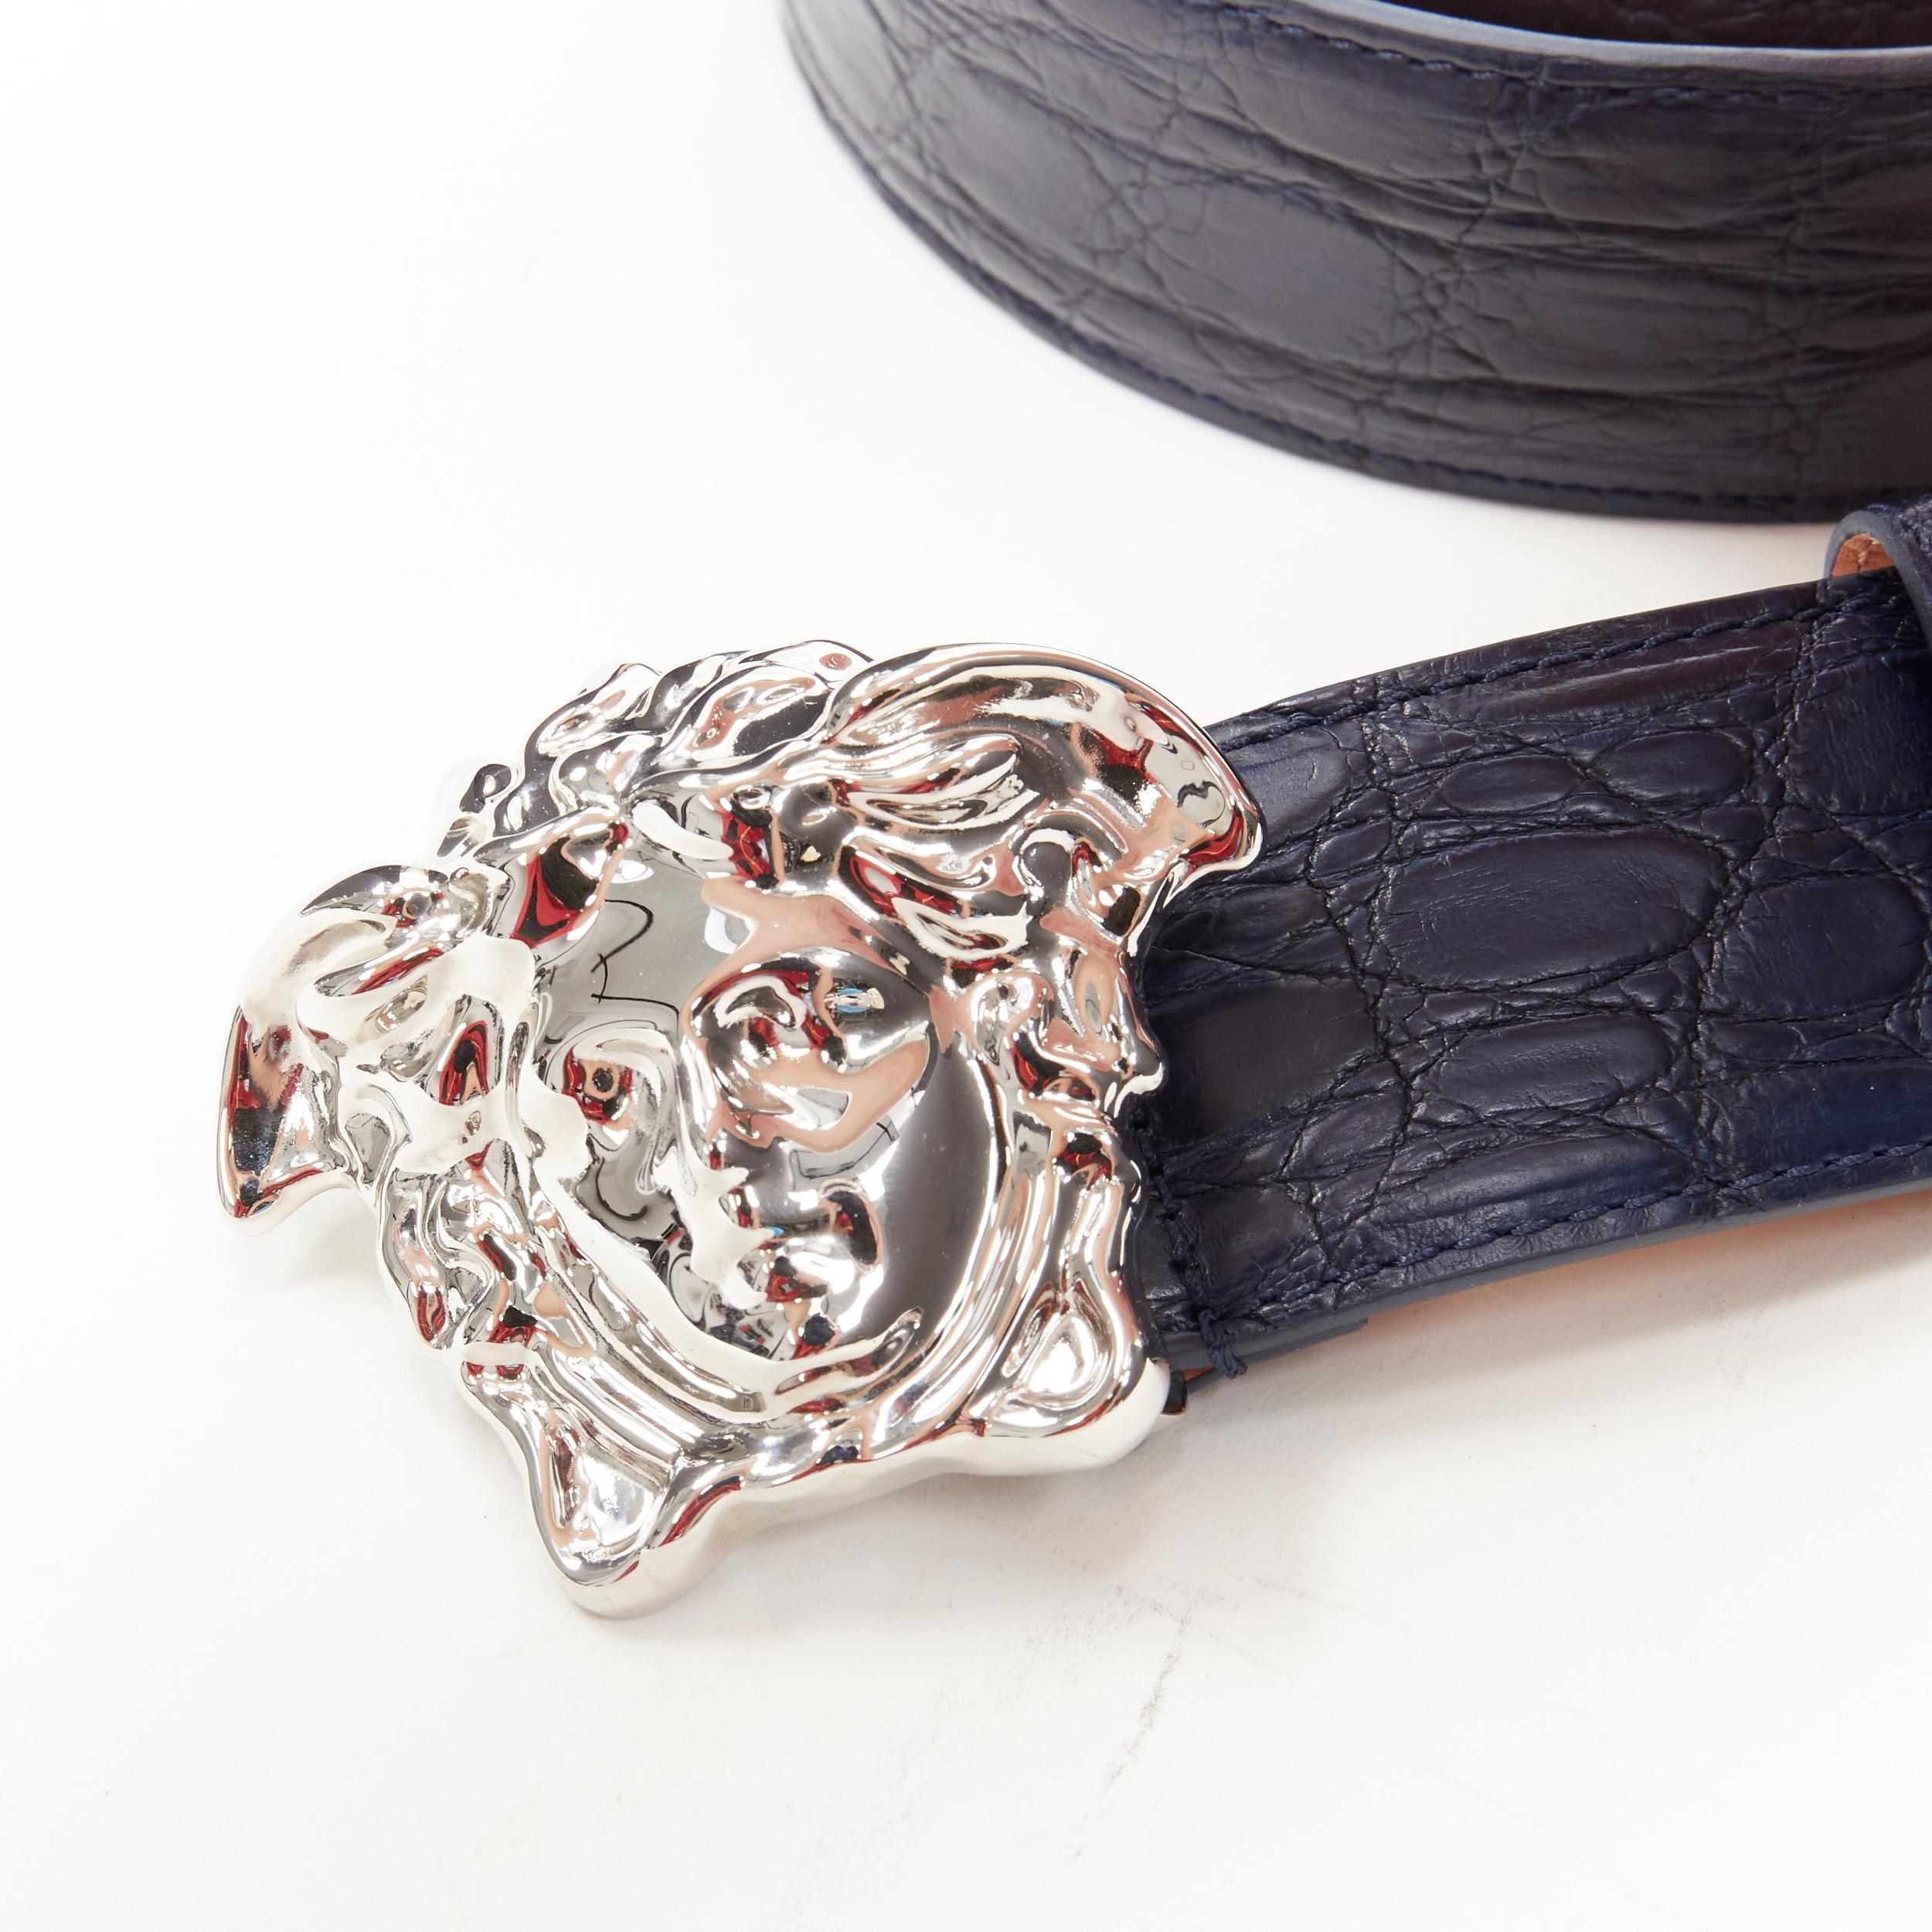 Men's new VERSACE $1200 La Medusa silver buckle blue croc leather belt  105cm 40-44